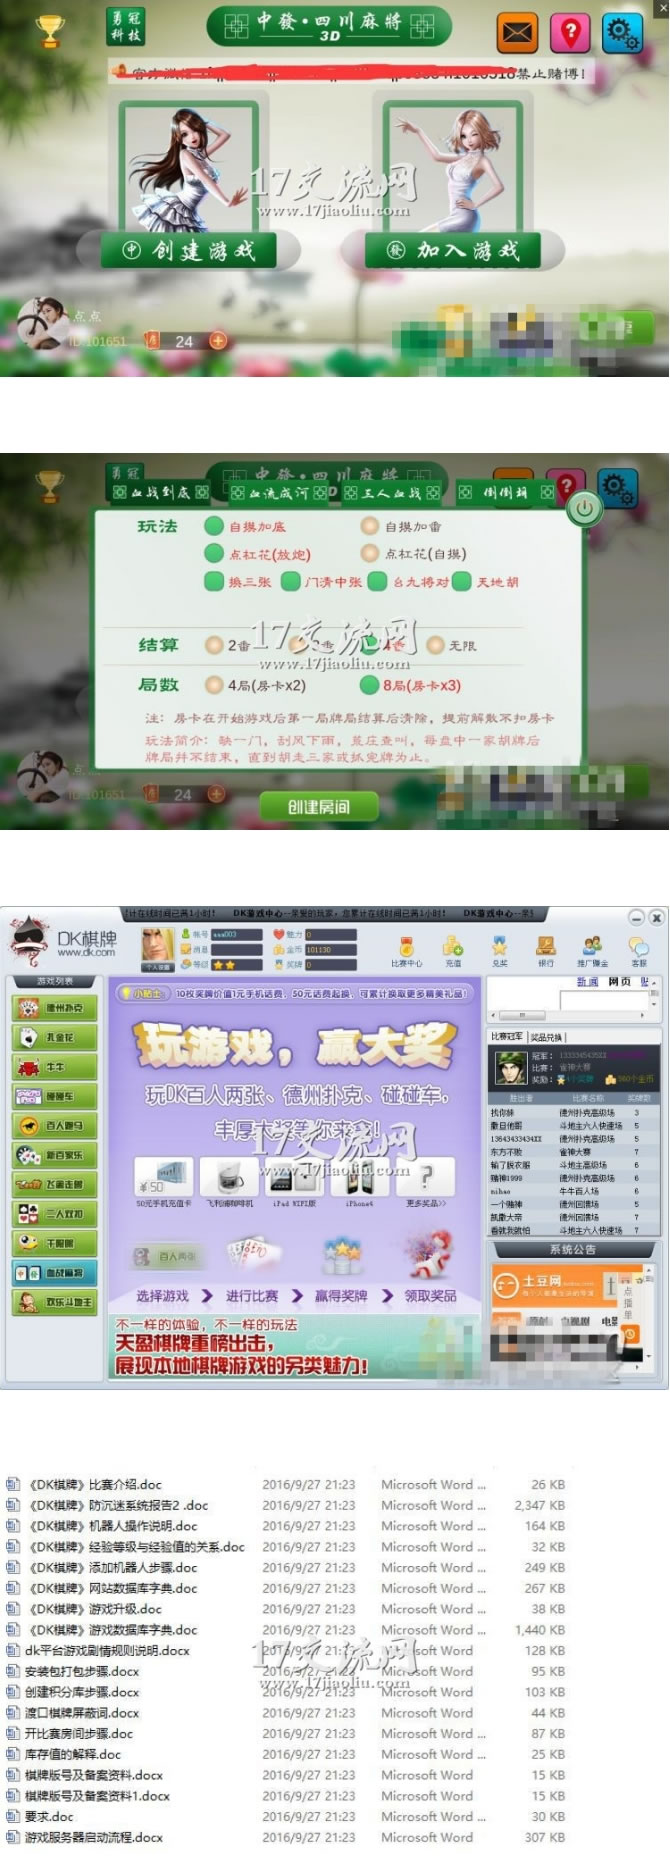 新版3D四川麻将娱乐游戏源码完整版可二次开发含客户端服务端和代理插图